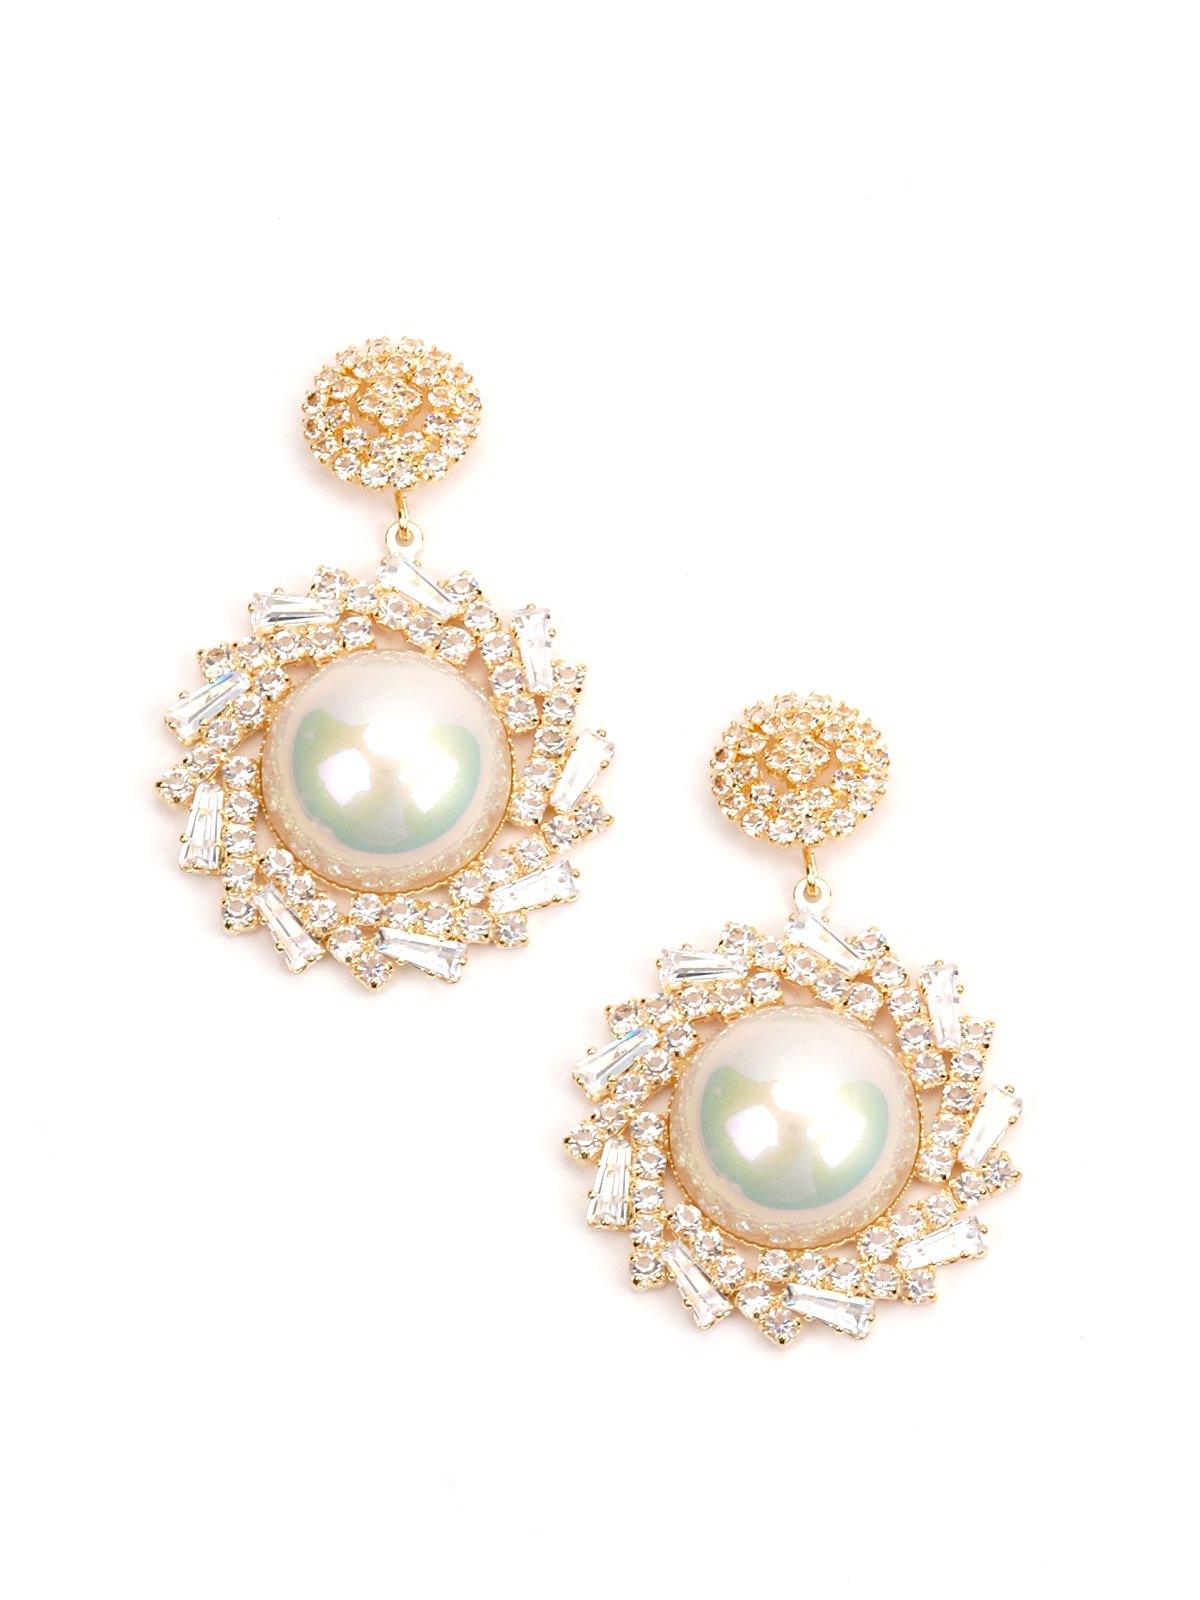 Women's Classy Gold Round Earrings - Odette